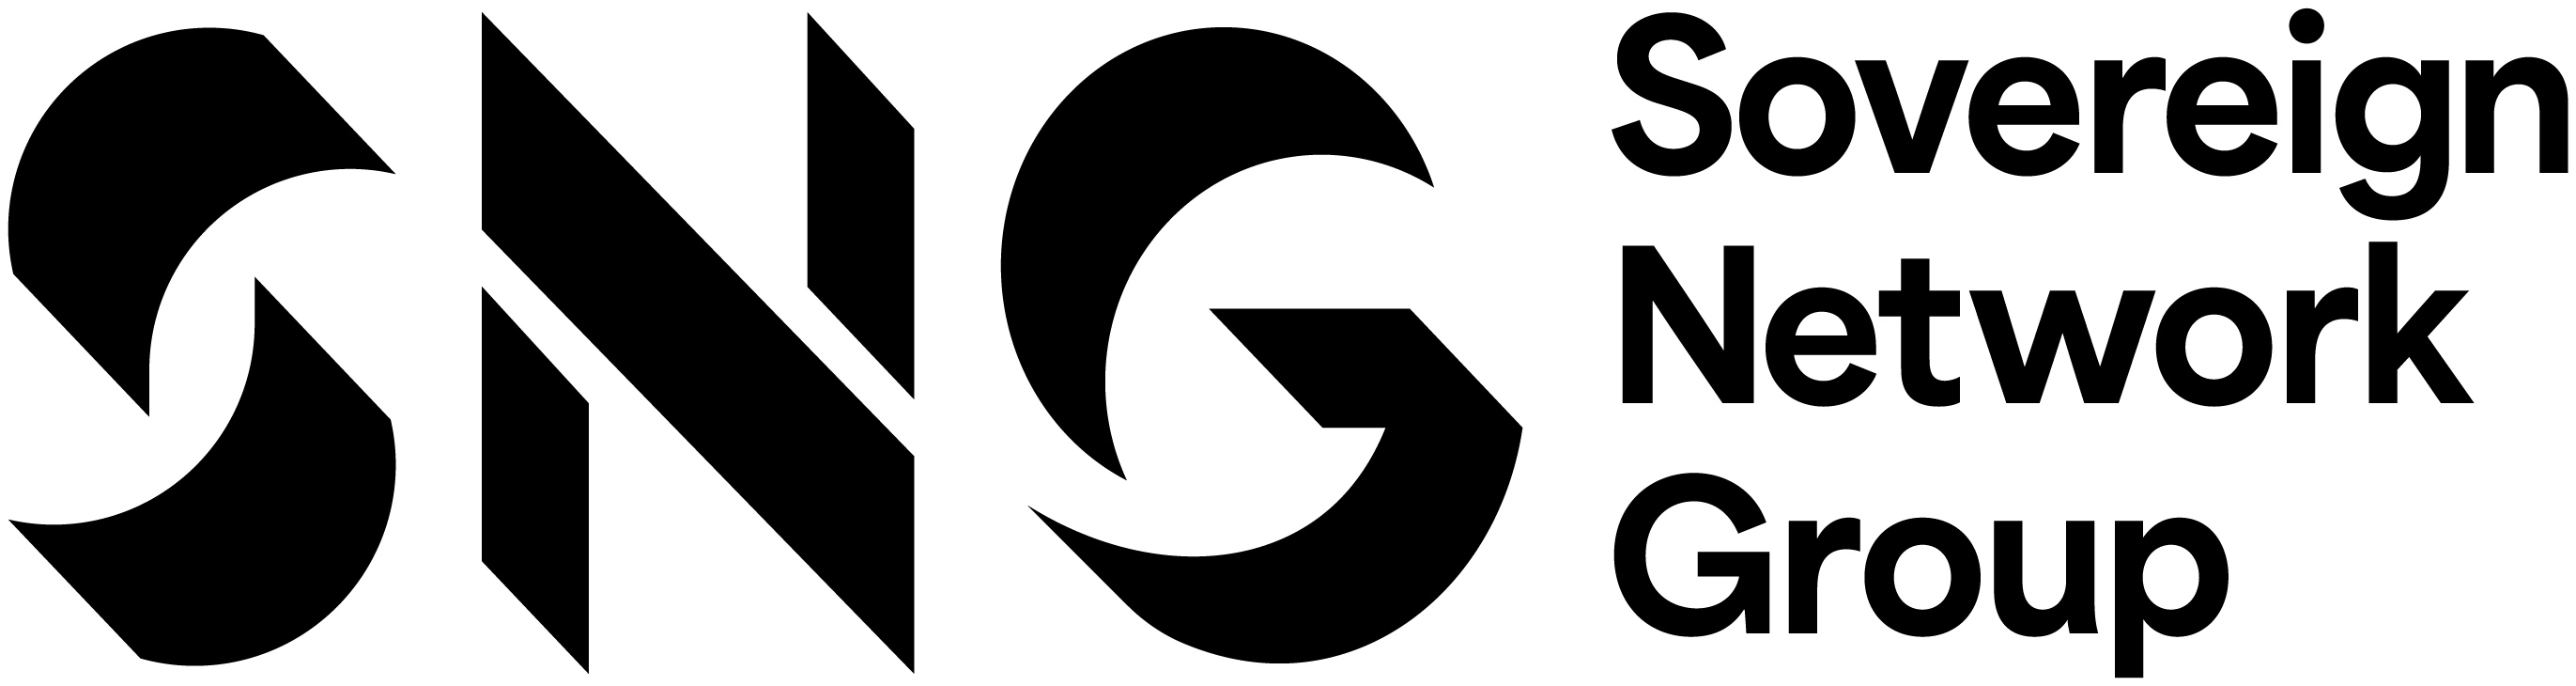 SNG_Primary logo_BK